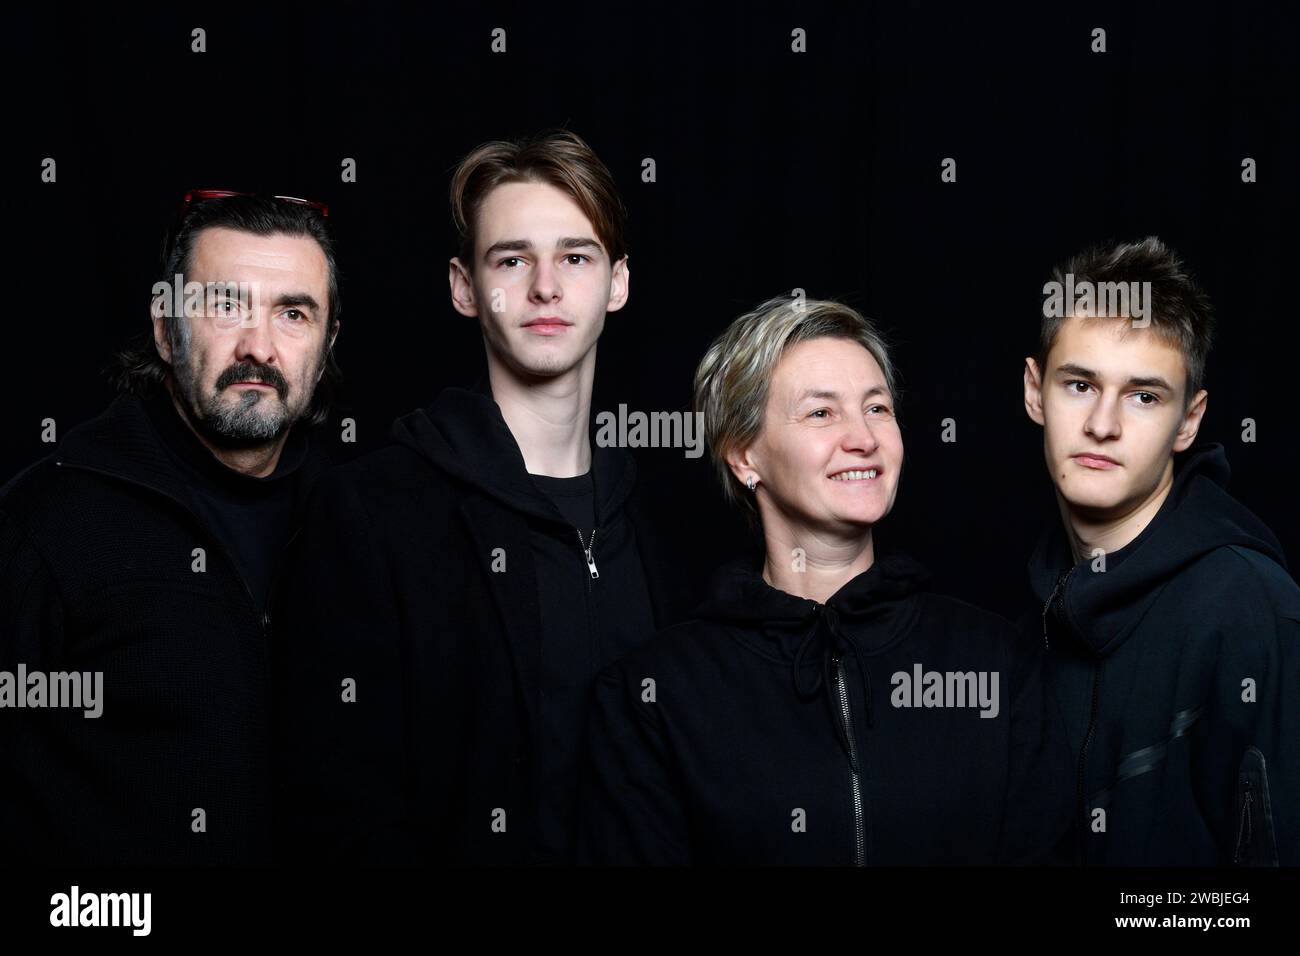 foto in studio di quattro persone che indossano abiti neri sullo sfondo nero Foto Stock